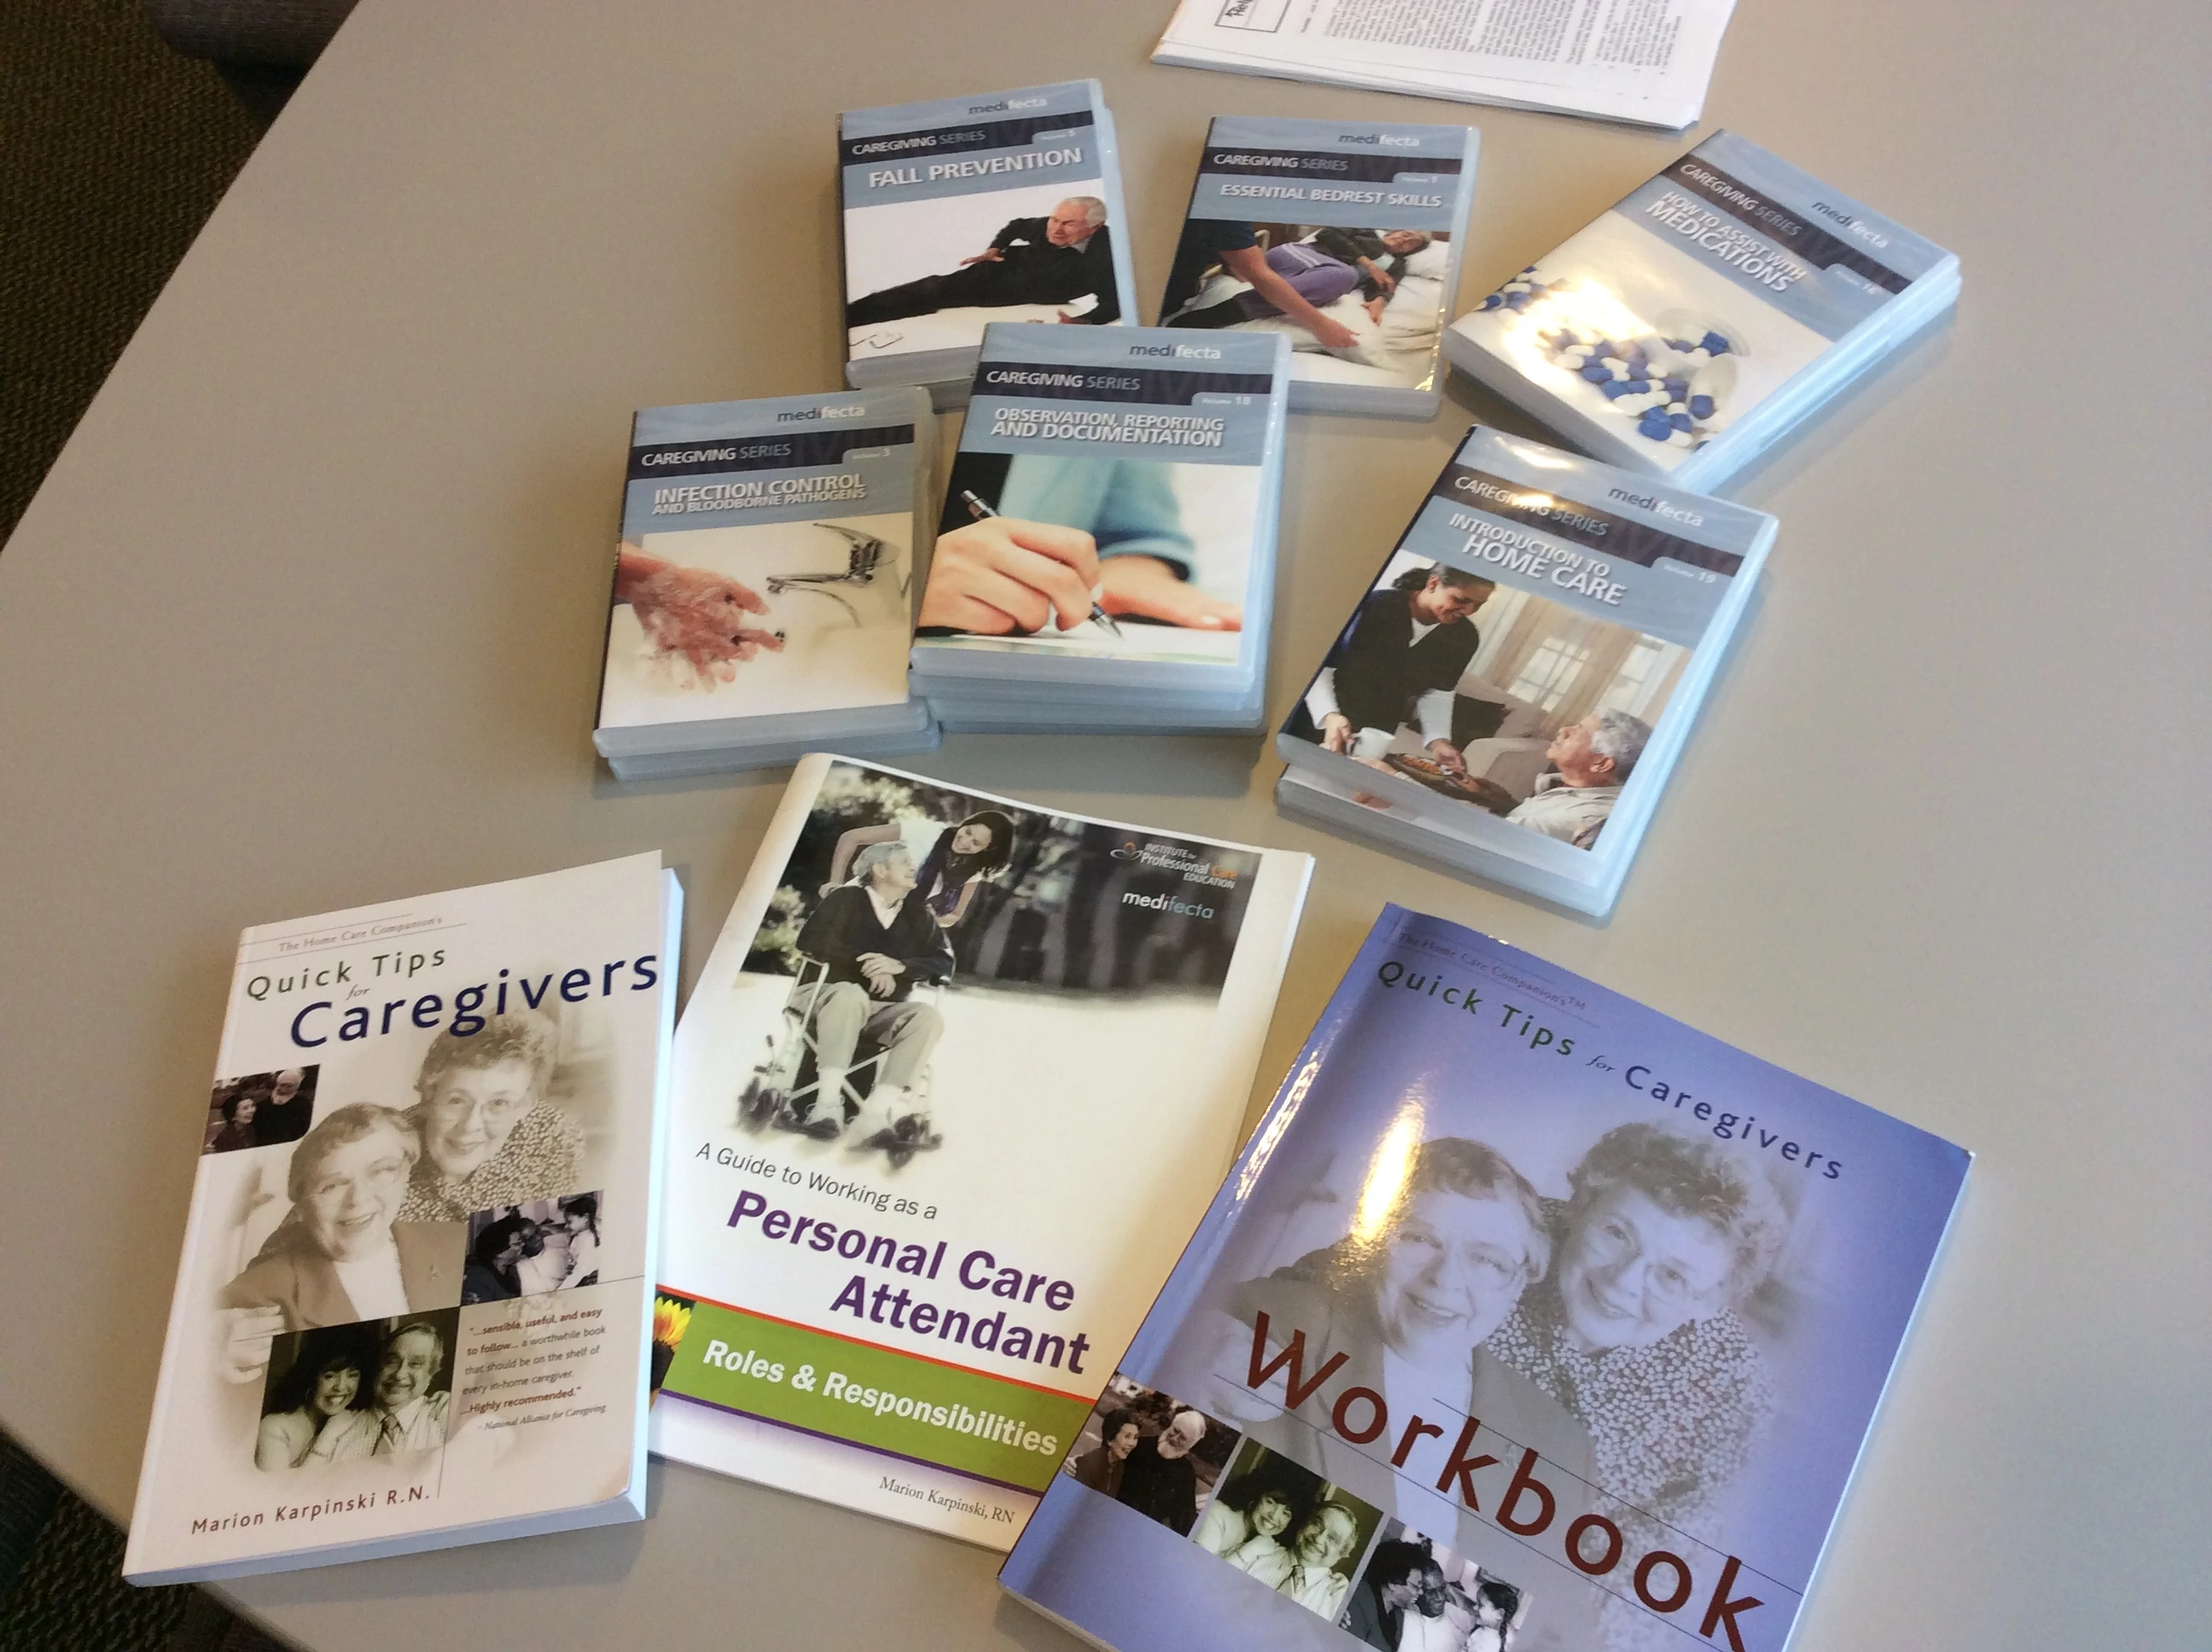 Books for caregiver training